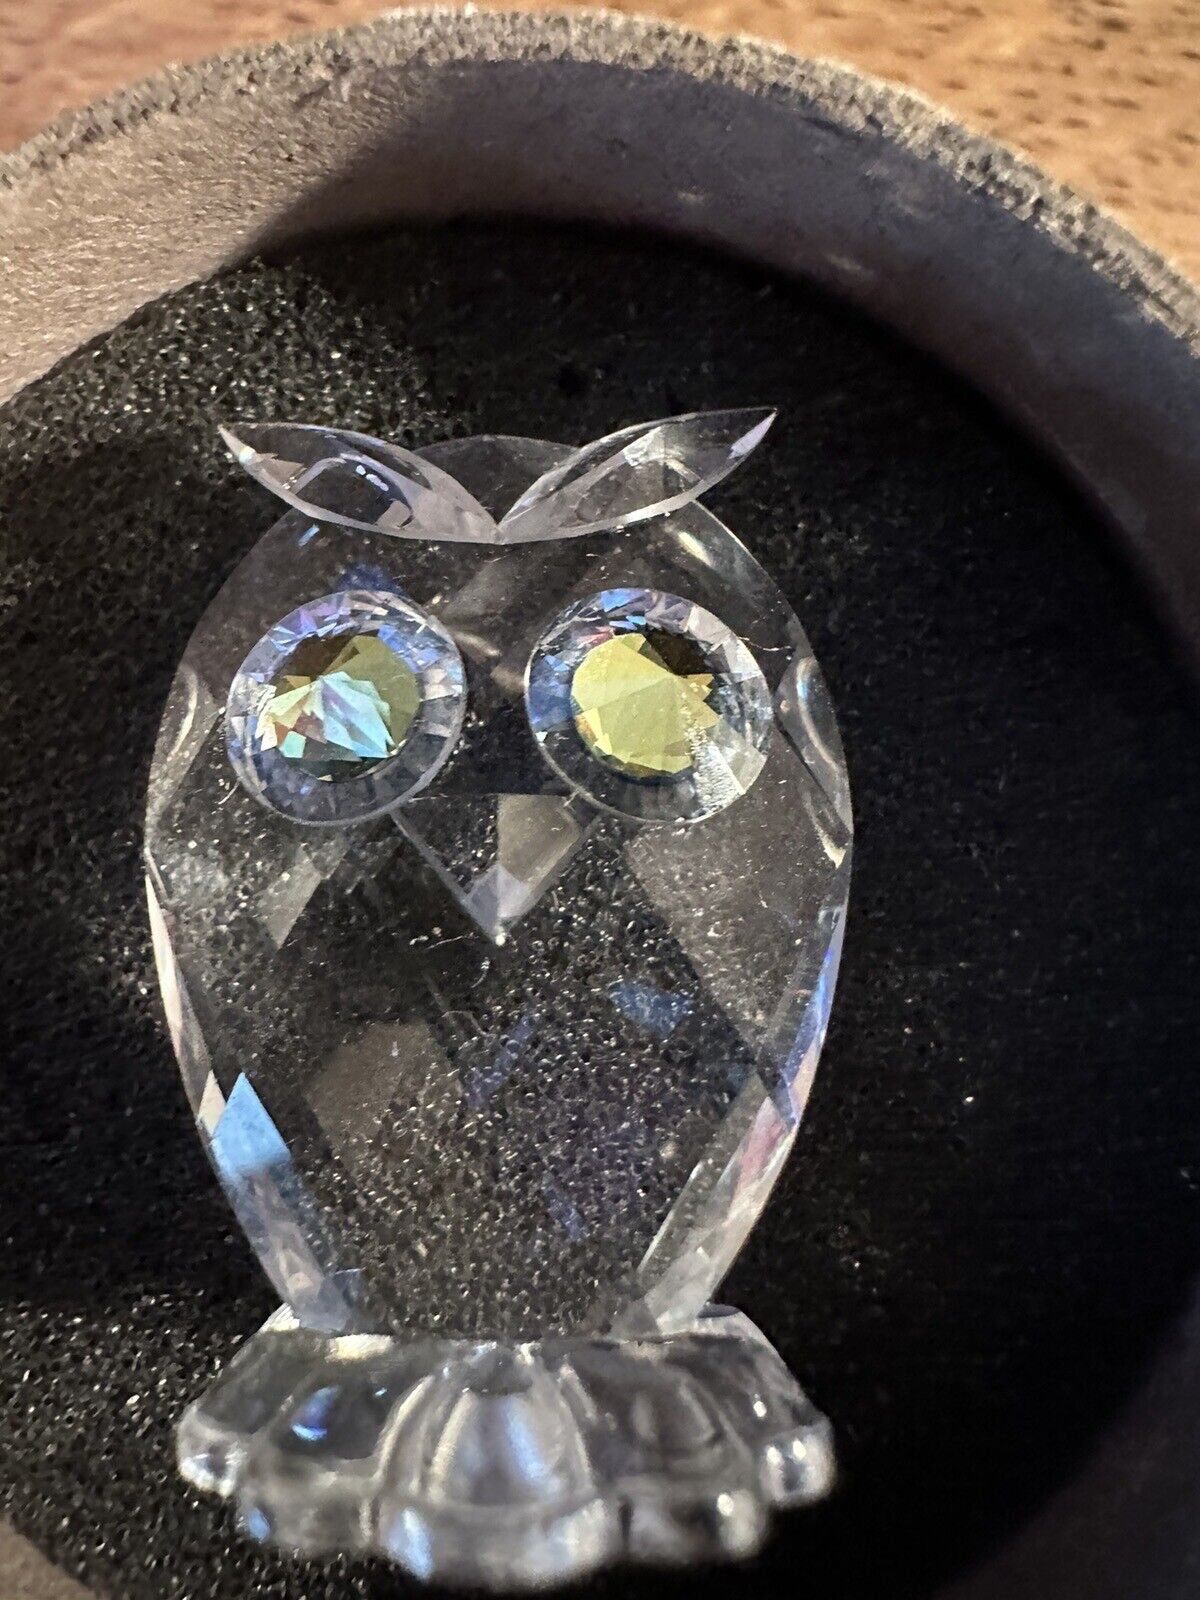 Swarovski Crystal Owl Figurine With Yellow Eyes 7654 w Certificate